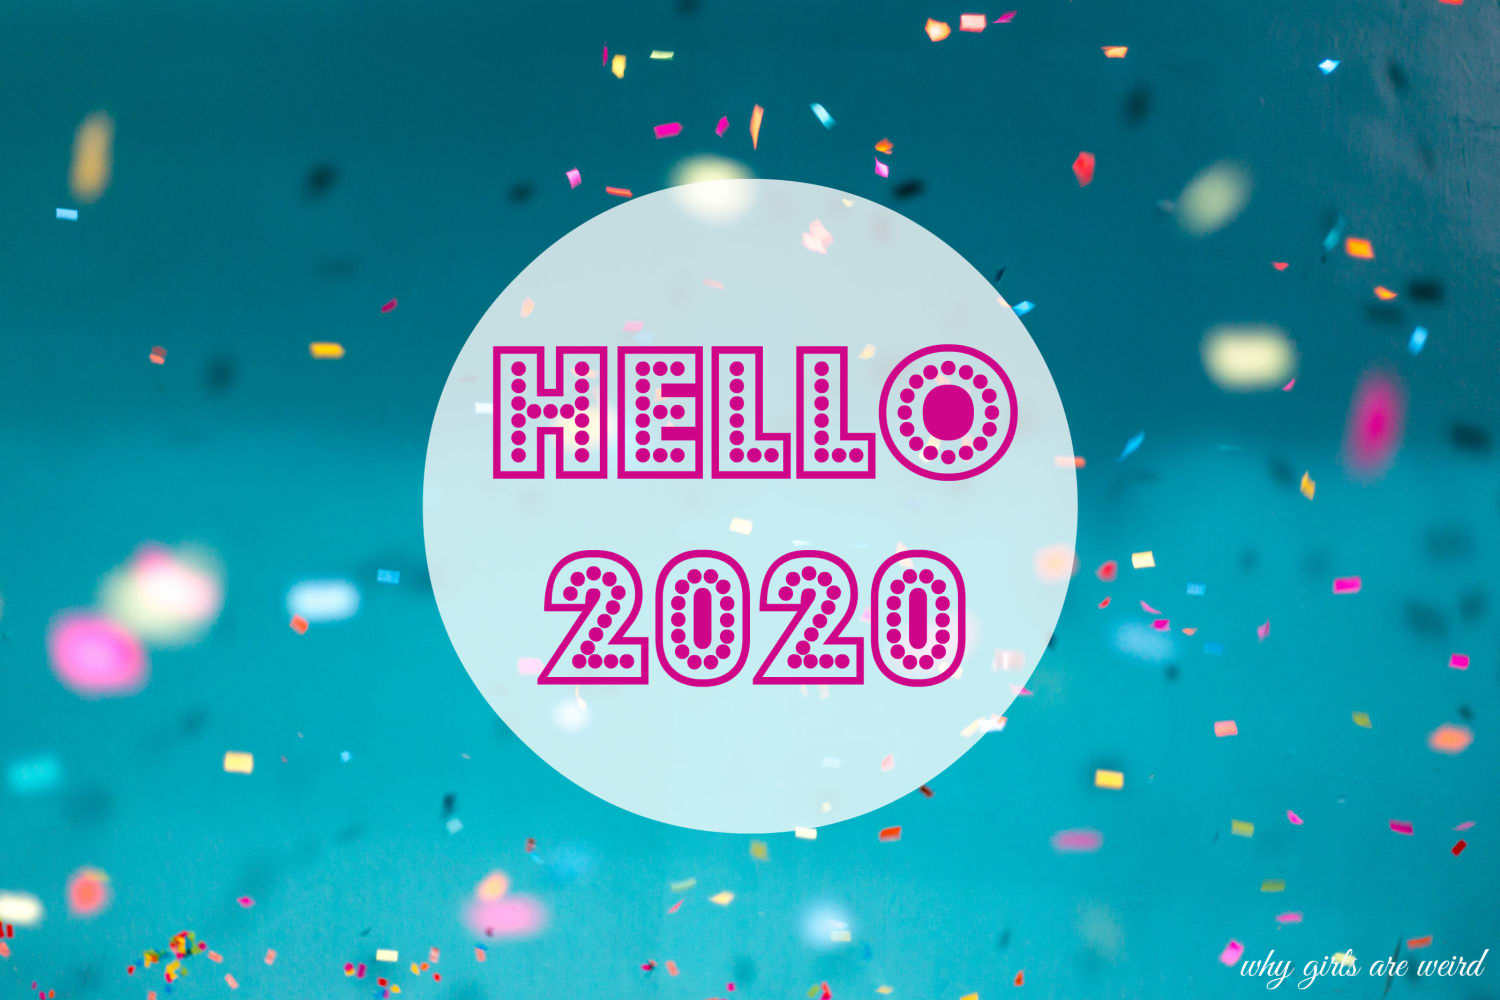 Hello 2020